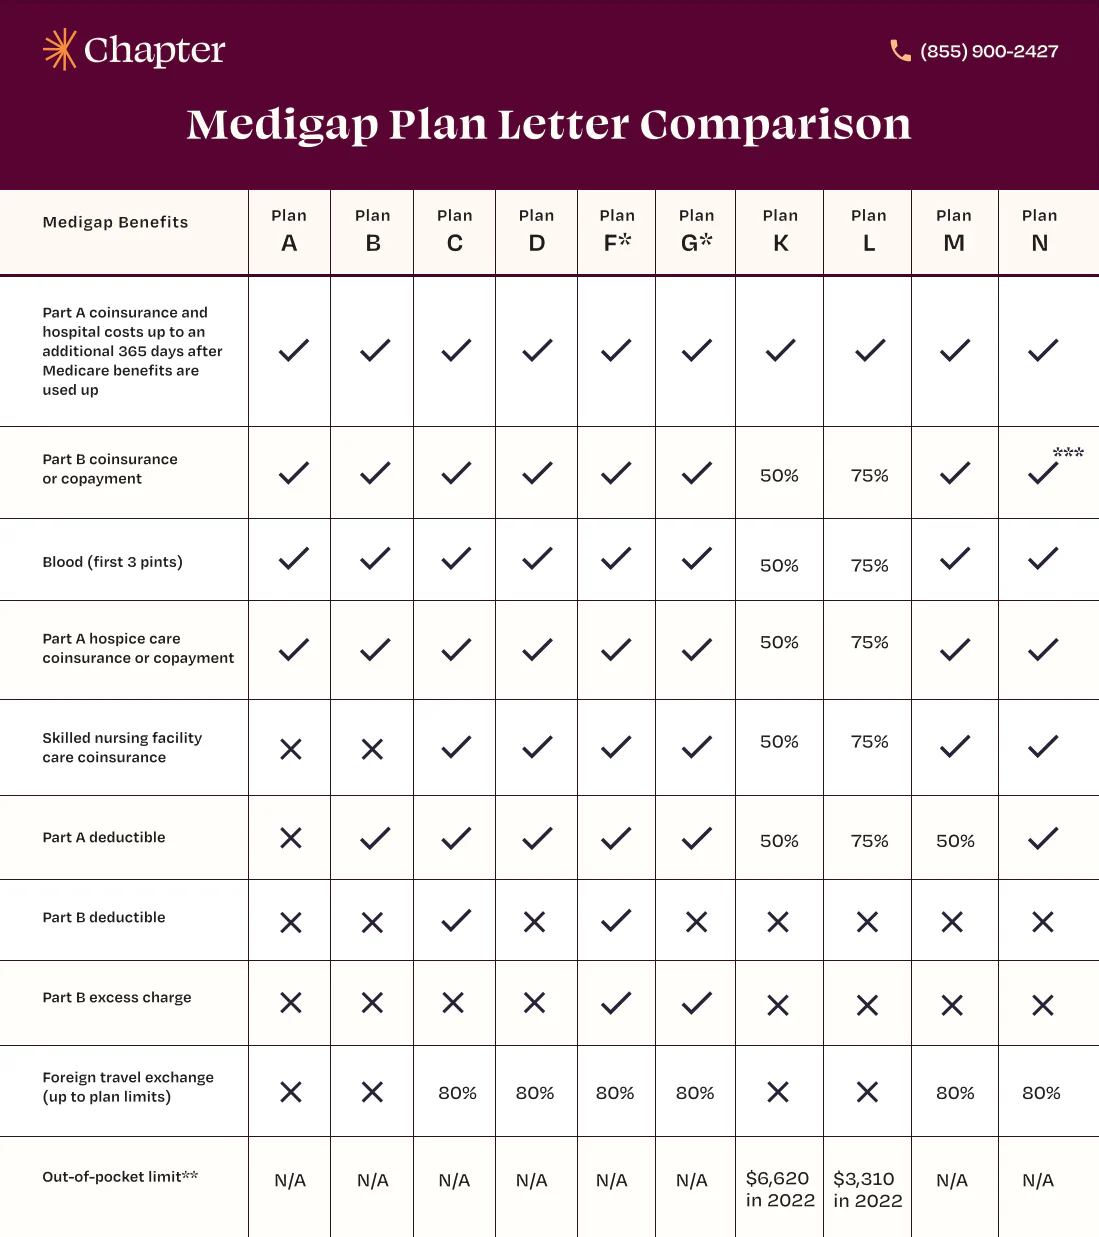 Medigap Plan letter comparison